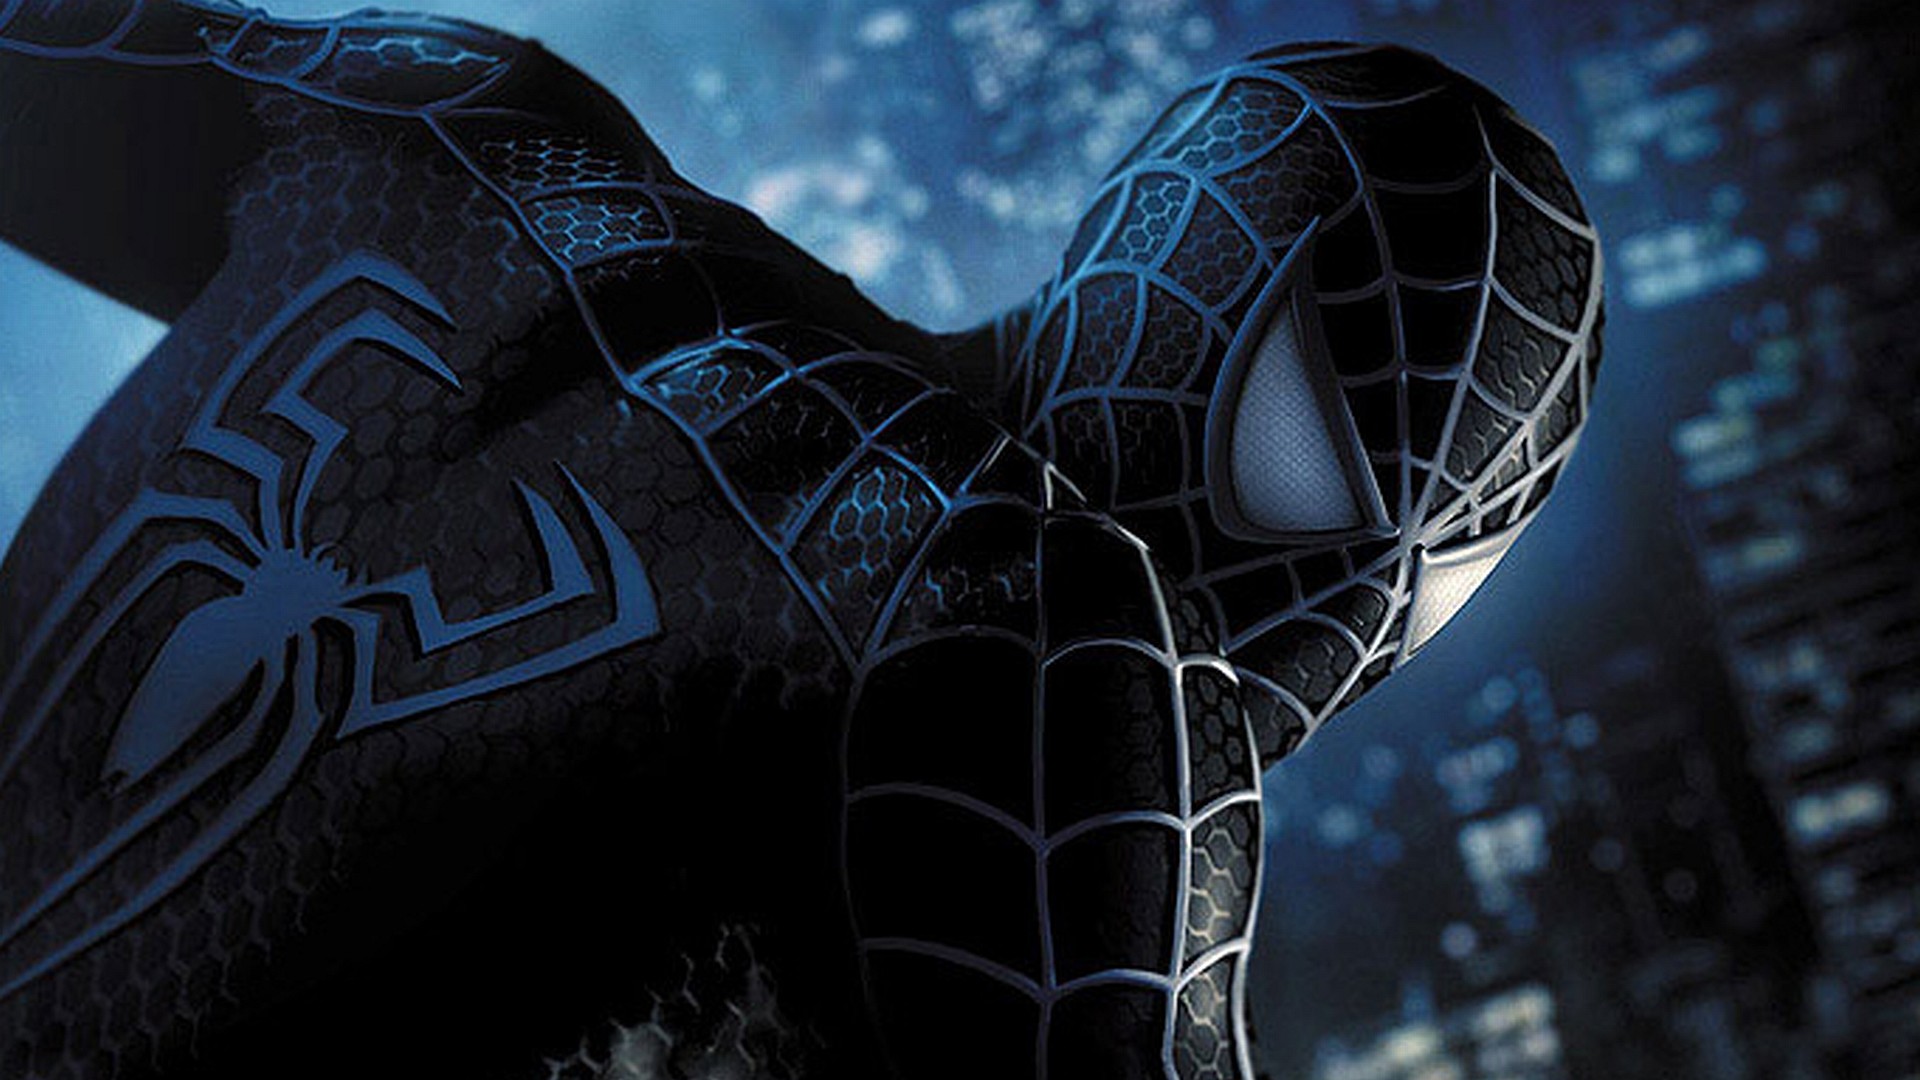 1920x1080 Spider-Man HD Wallpaper | Hintergrund |  | ID:167761 - Wallpaper  Abyss